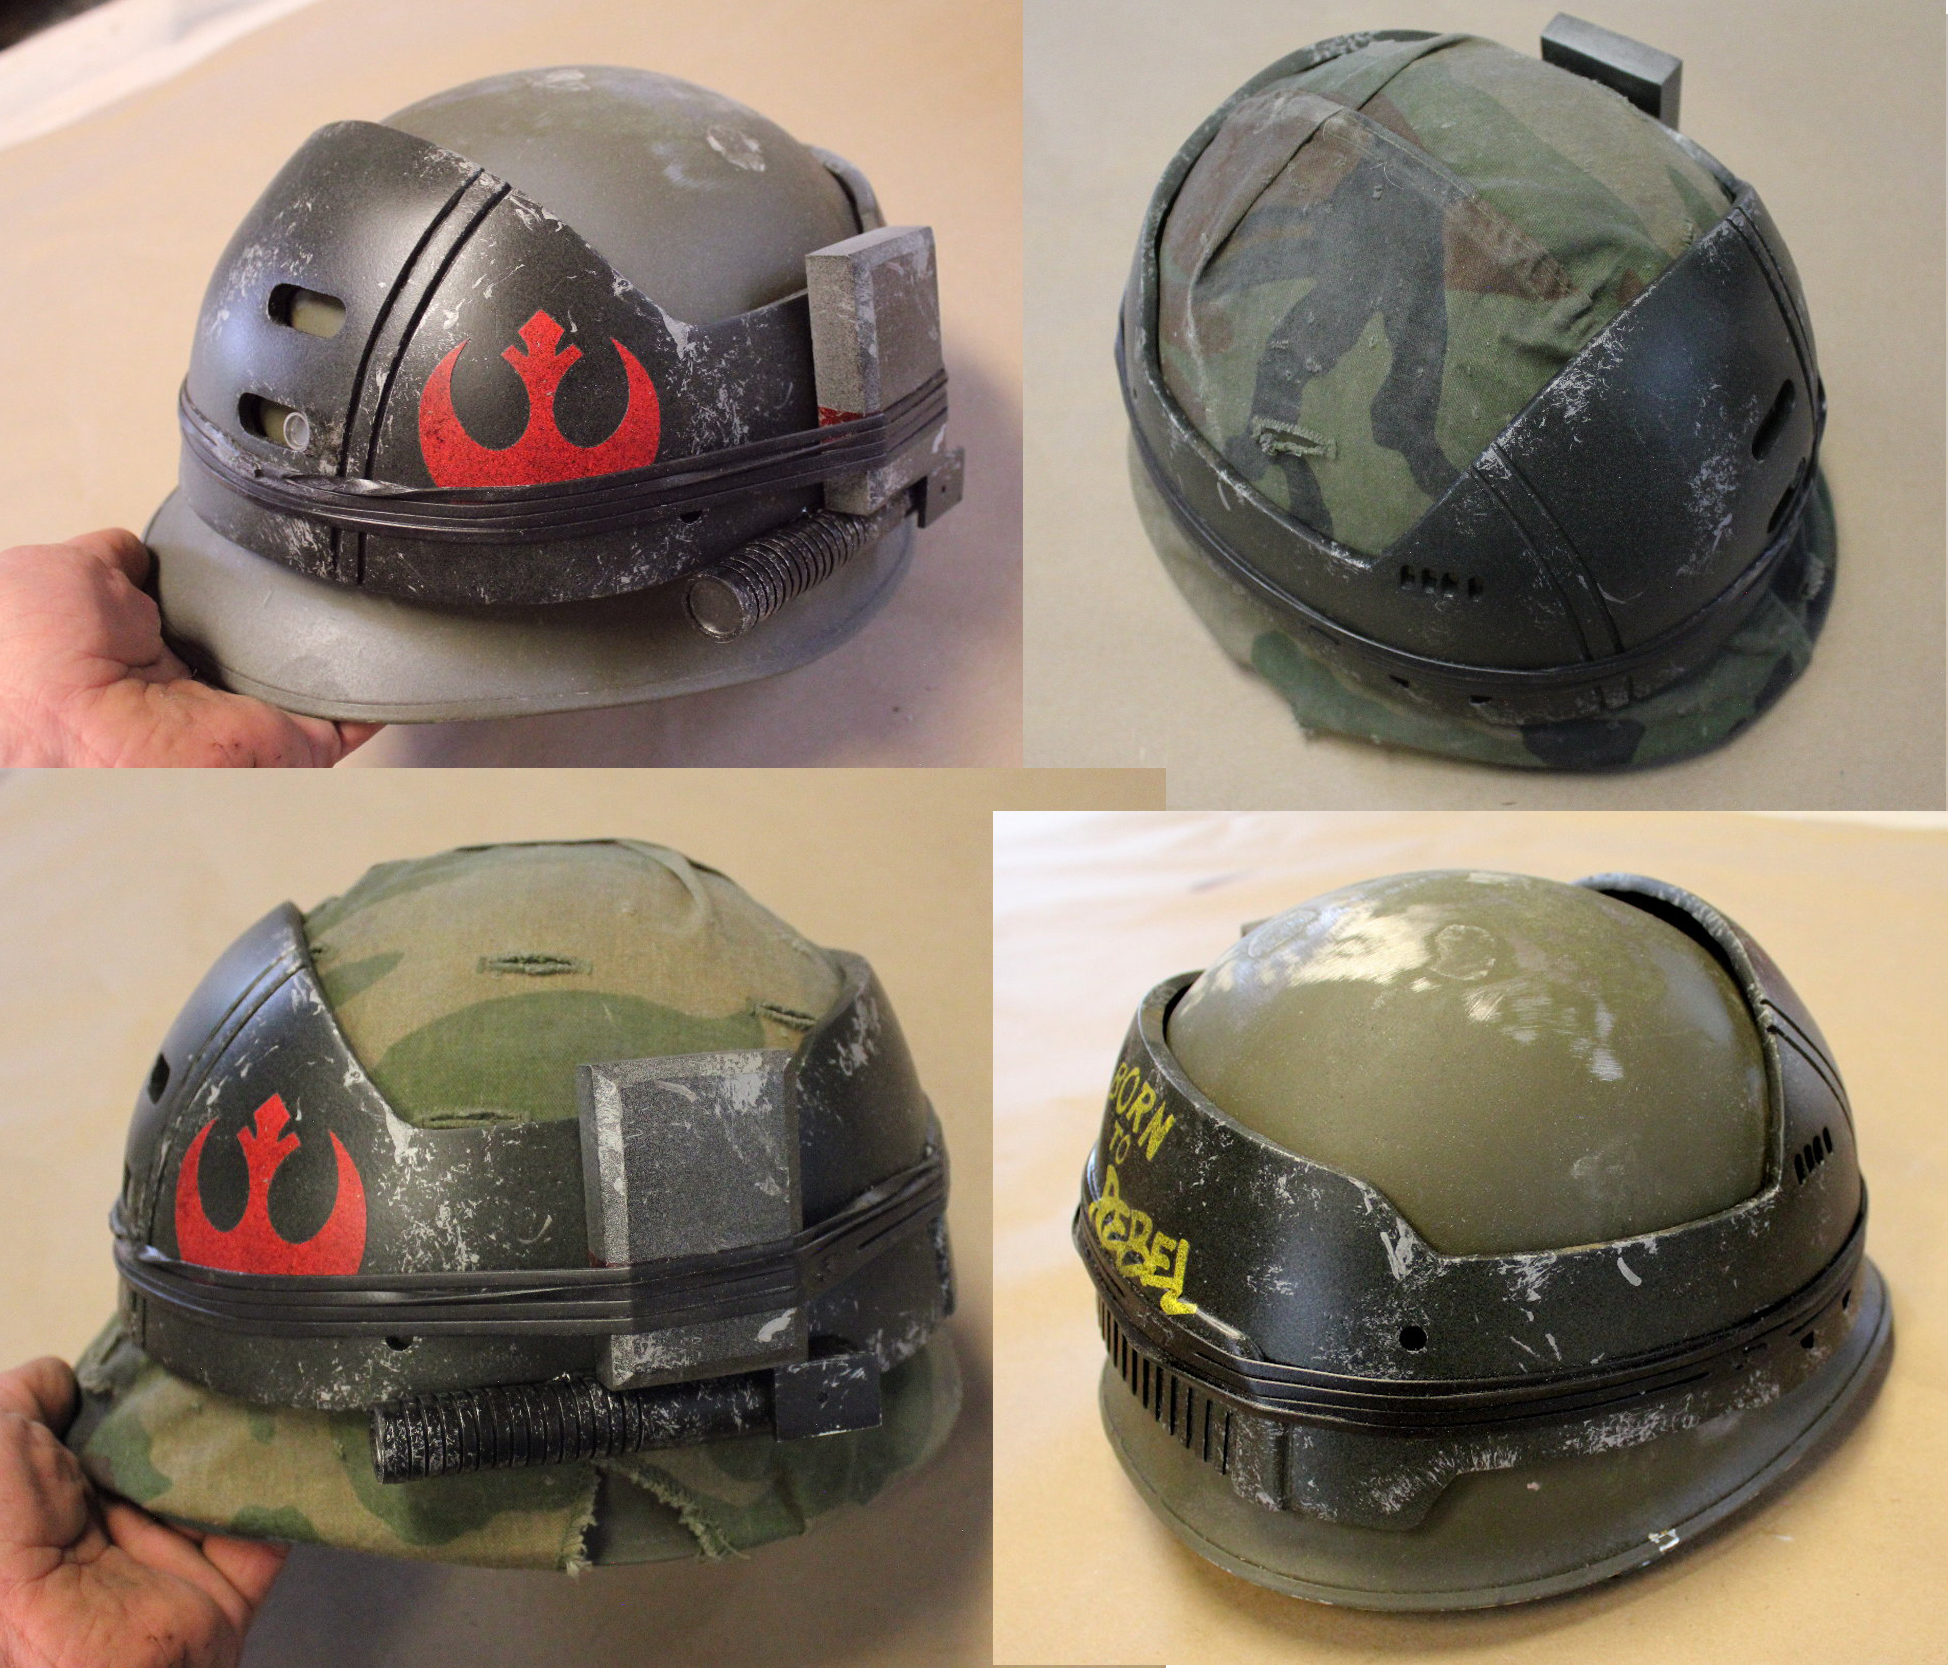 Helmzubehörgürtel für Outdoor Aktivitäten Zer one Helmband für M1 M88 Mich Helm Reflektierender Camo Gurt 